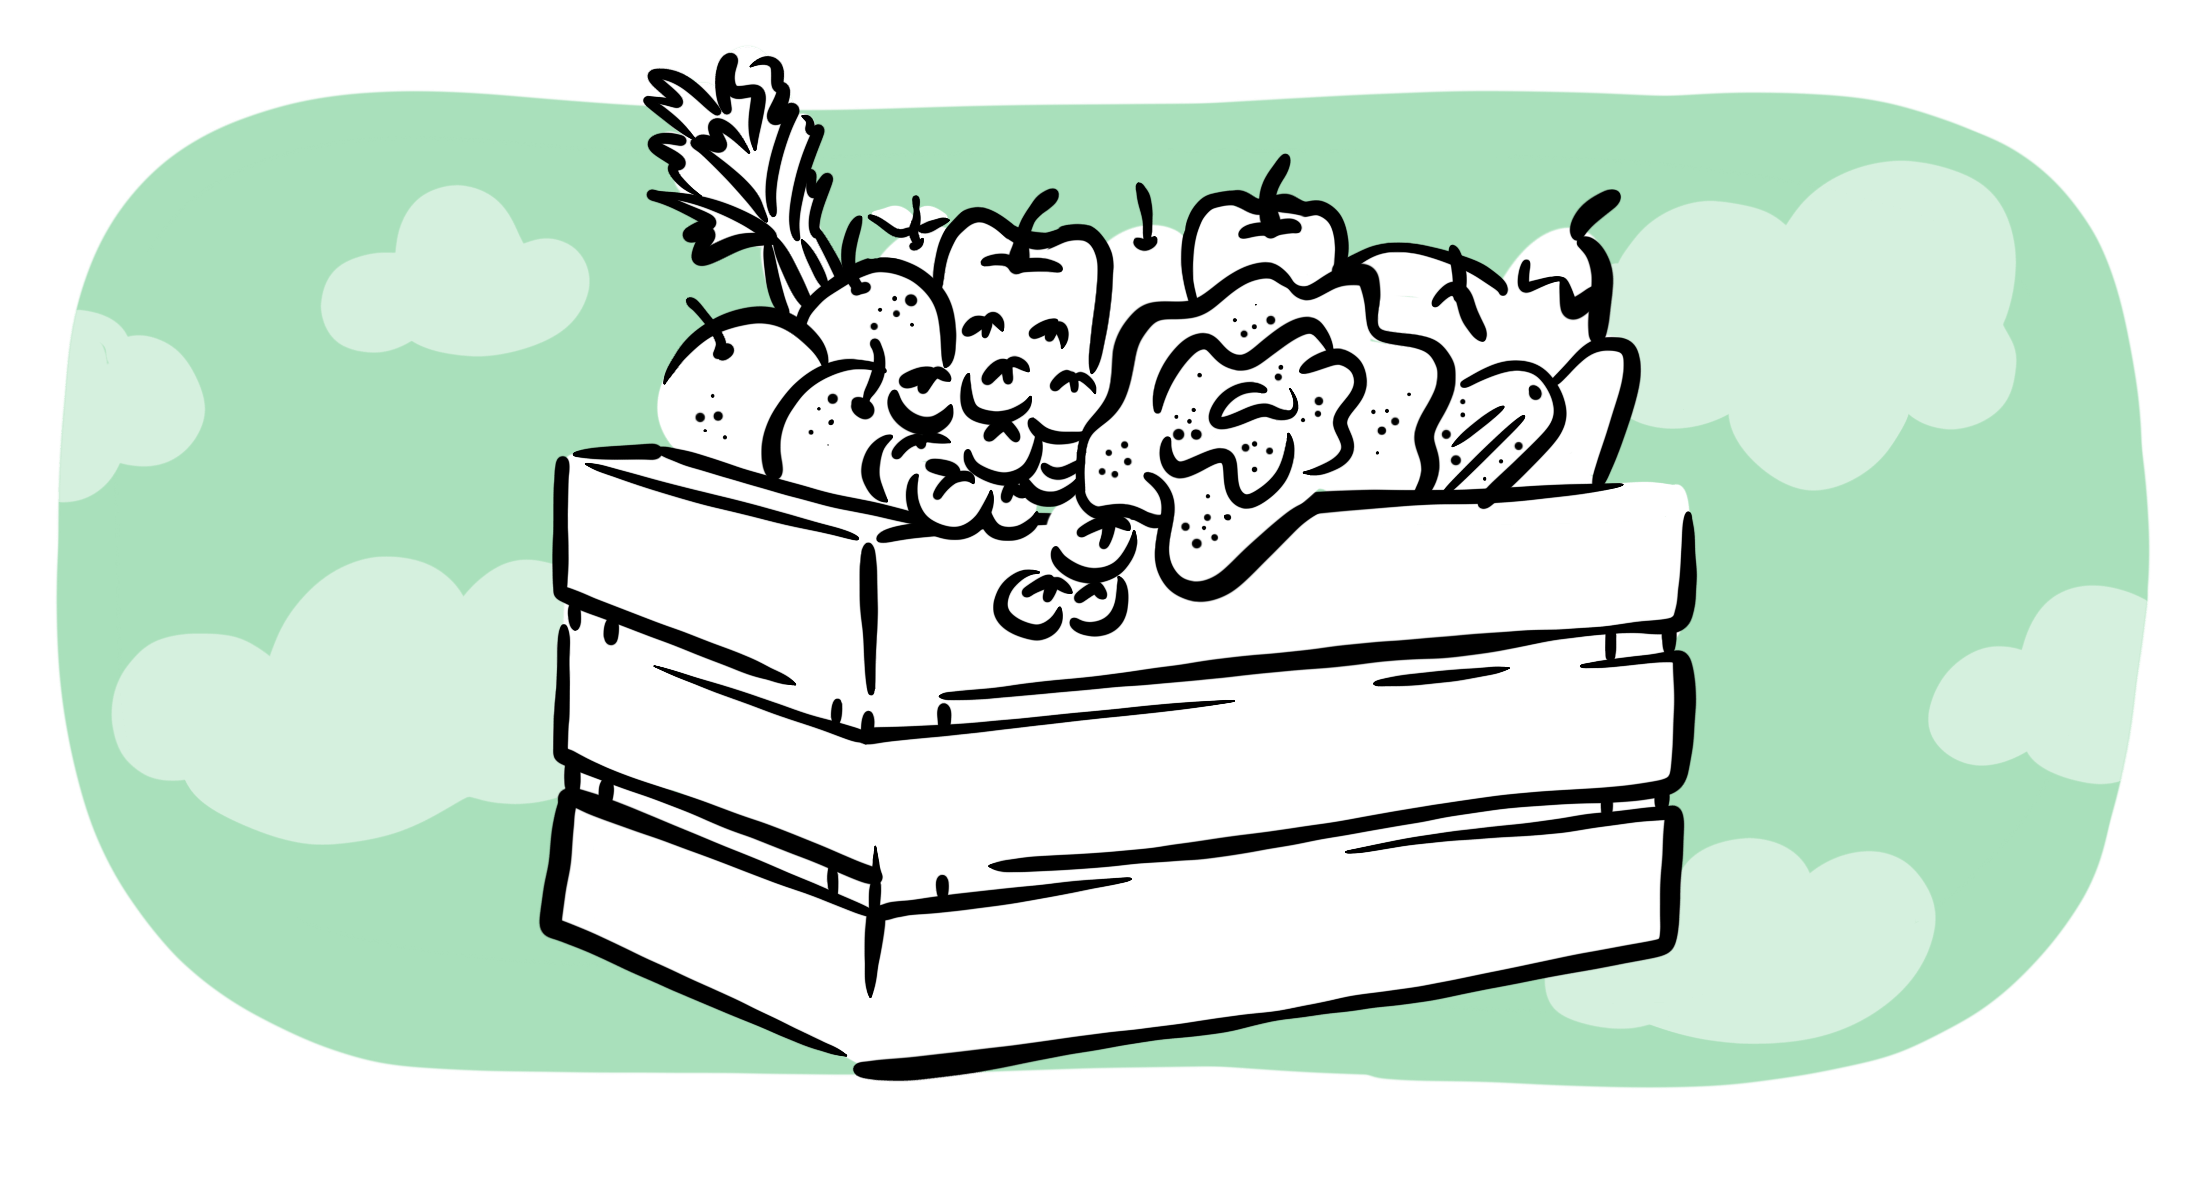 Una caja de verduras.